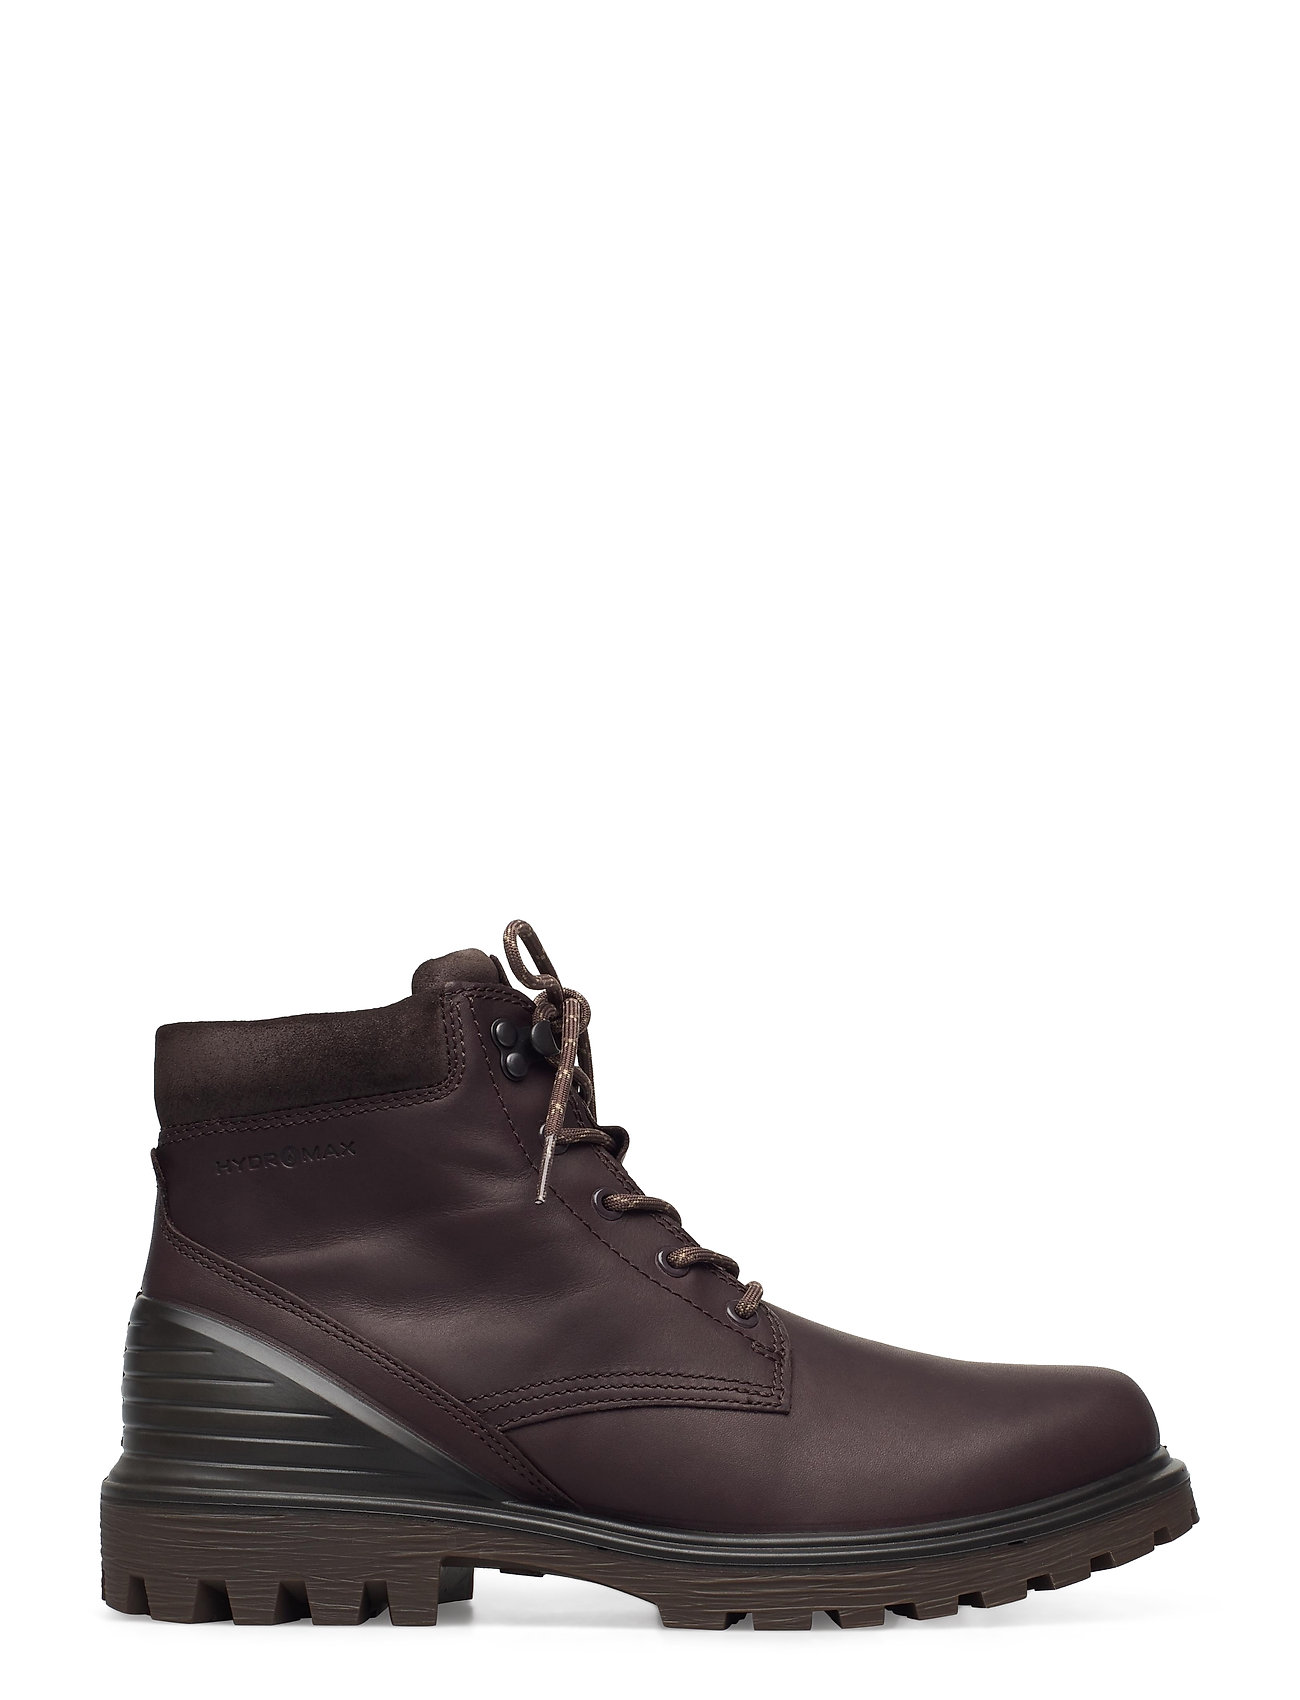 kølig komme til syne væske ECCO vinterstøvler – Tredtray M Shoes Boots Winter Boots Brun ECCO til dame  i Sort - Pashion.dk